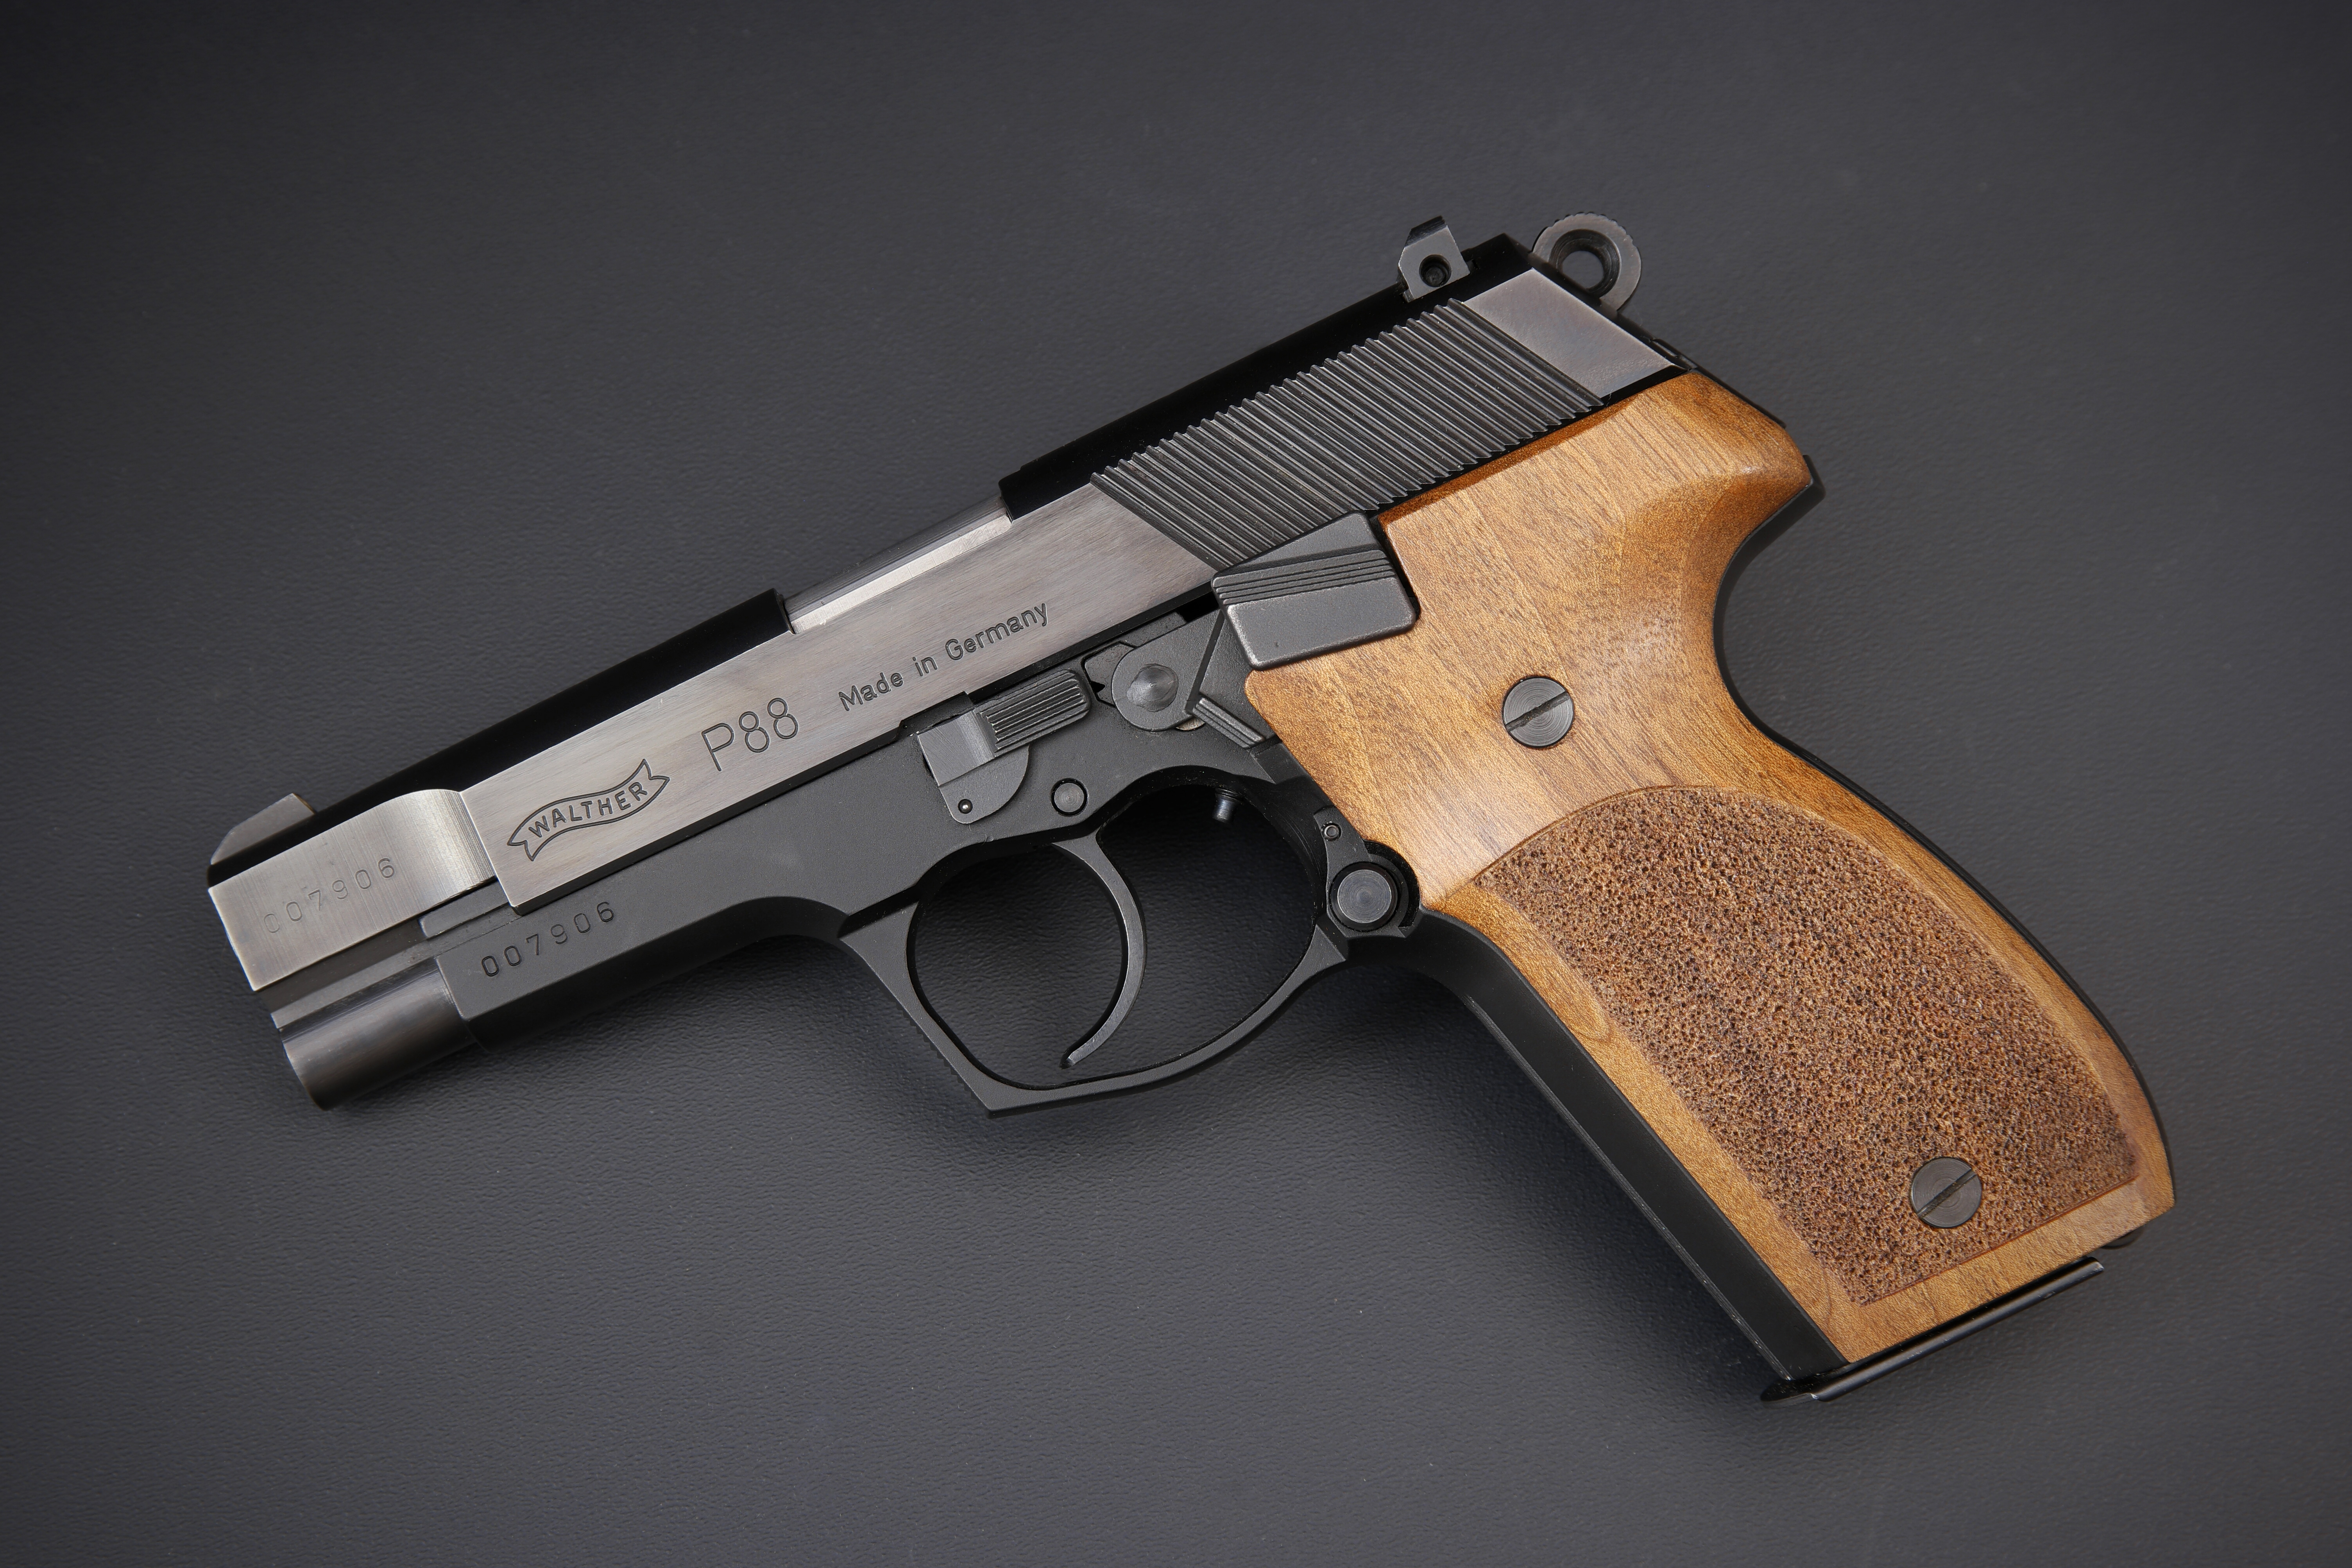 Pistolet à blanc Walther calibre 9mm modèle P88 Compact Nickelé